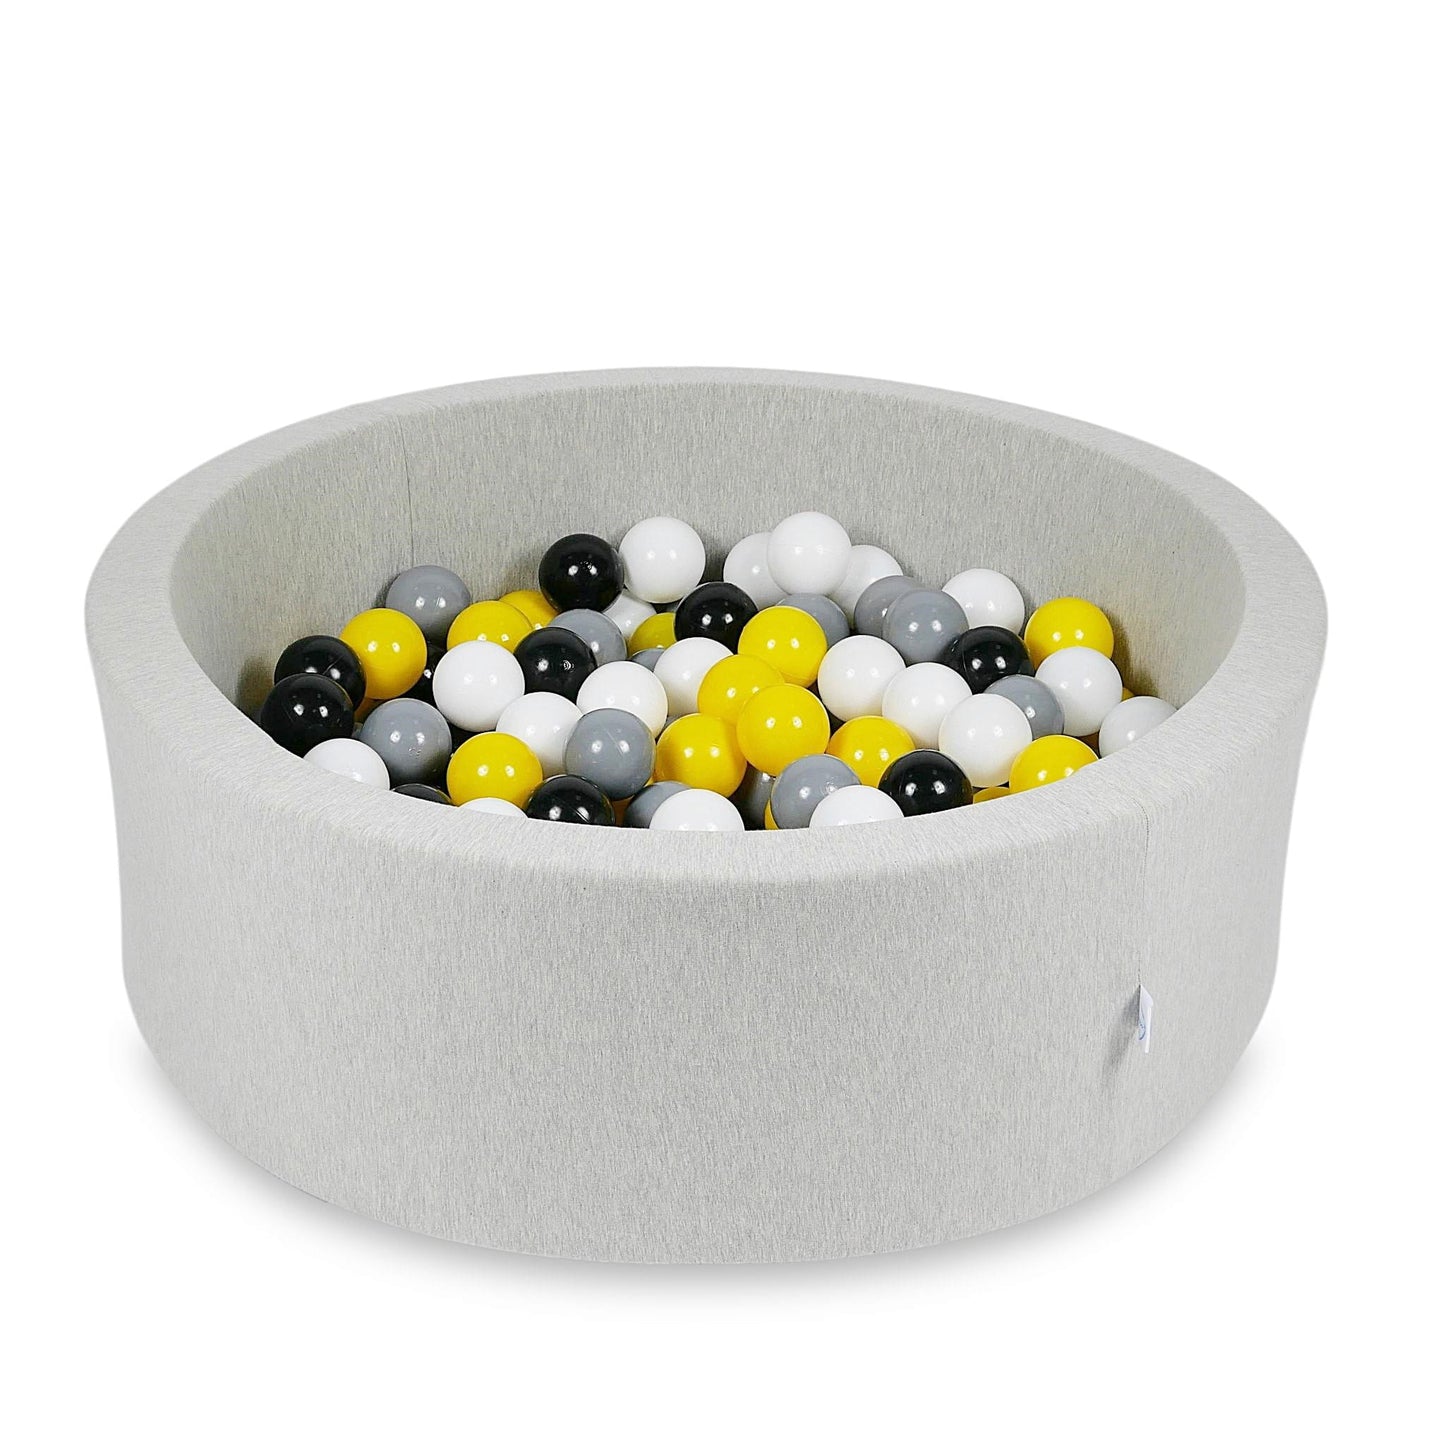 Piscine à Balles 90x30cm gris clair avec balles 200pcs (jaune, blanc, gris, noir)